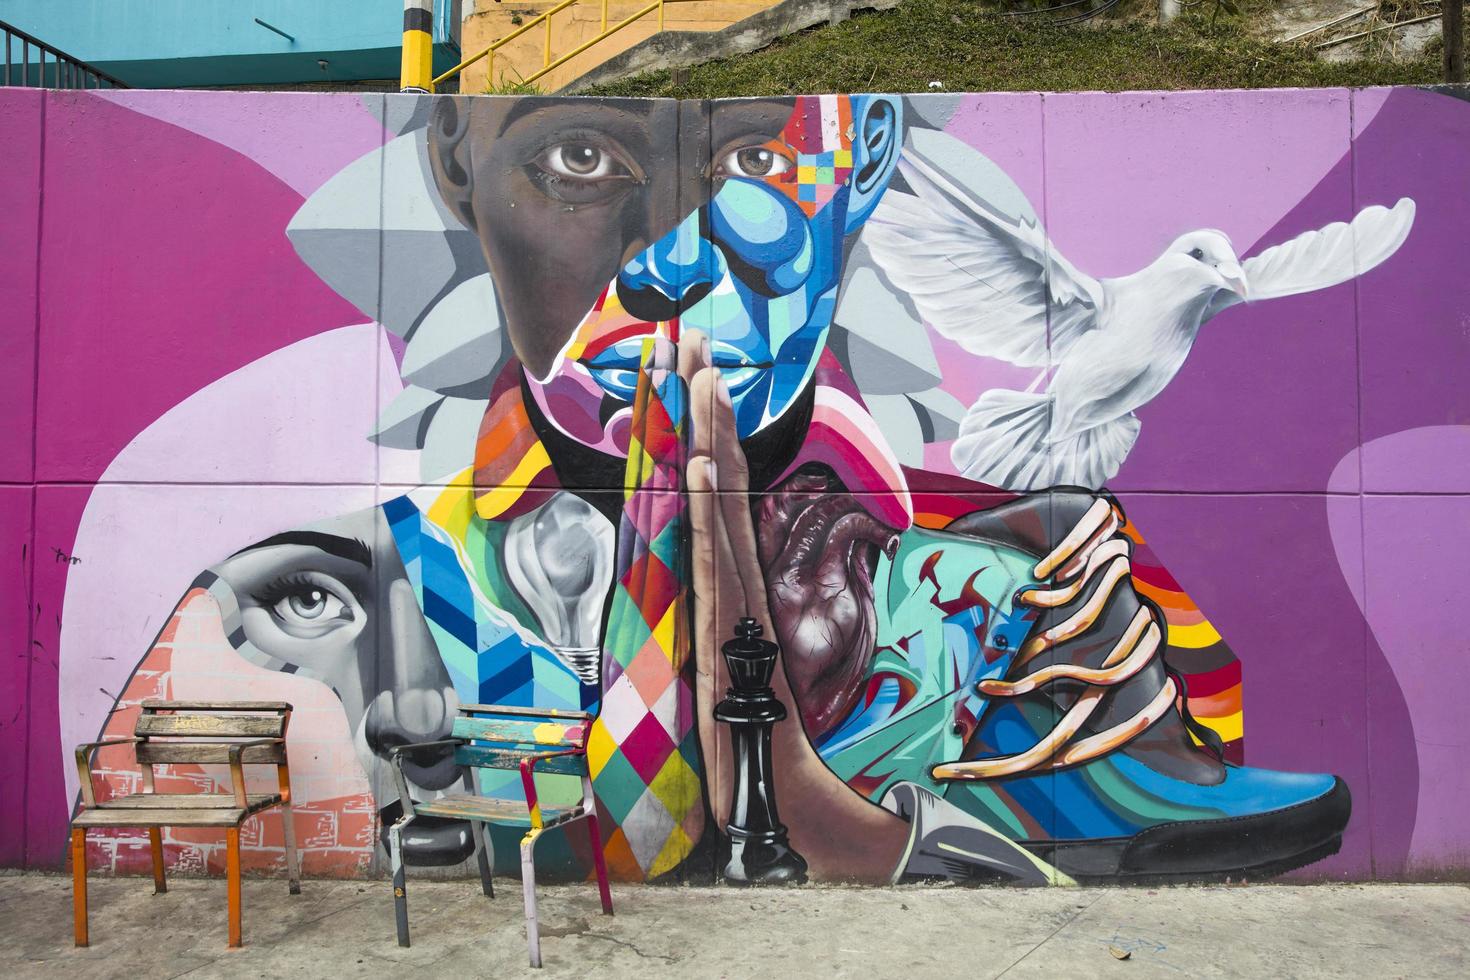 medellin, colombia, 2019 - street art of comuna 13 i medellin, colombia. en gång känd som colombias farligaste barrio, idag är graffiti-turen en av de mest populära turistattraktionerna i medellin. foto